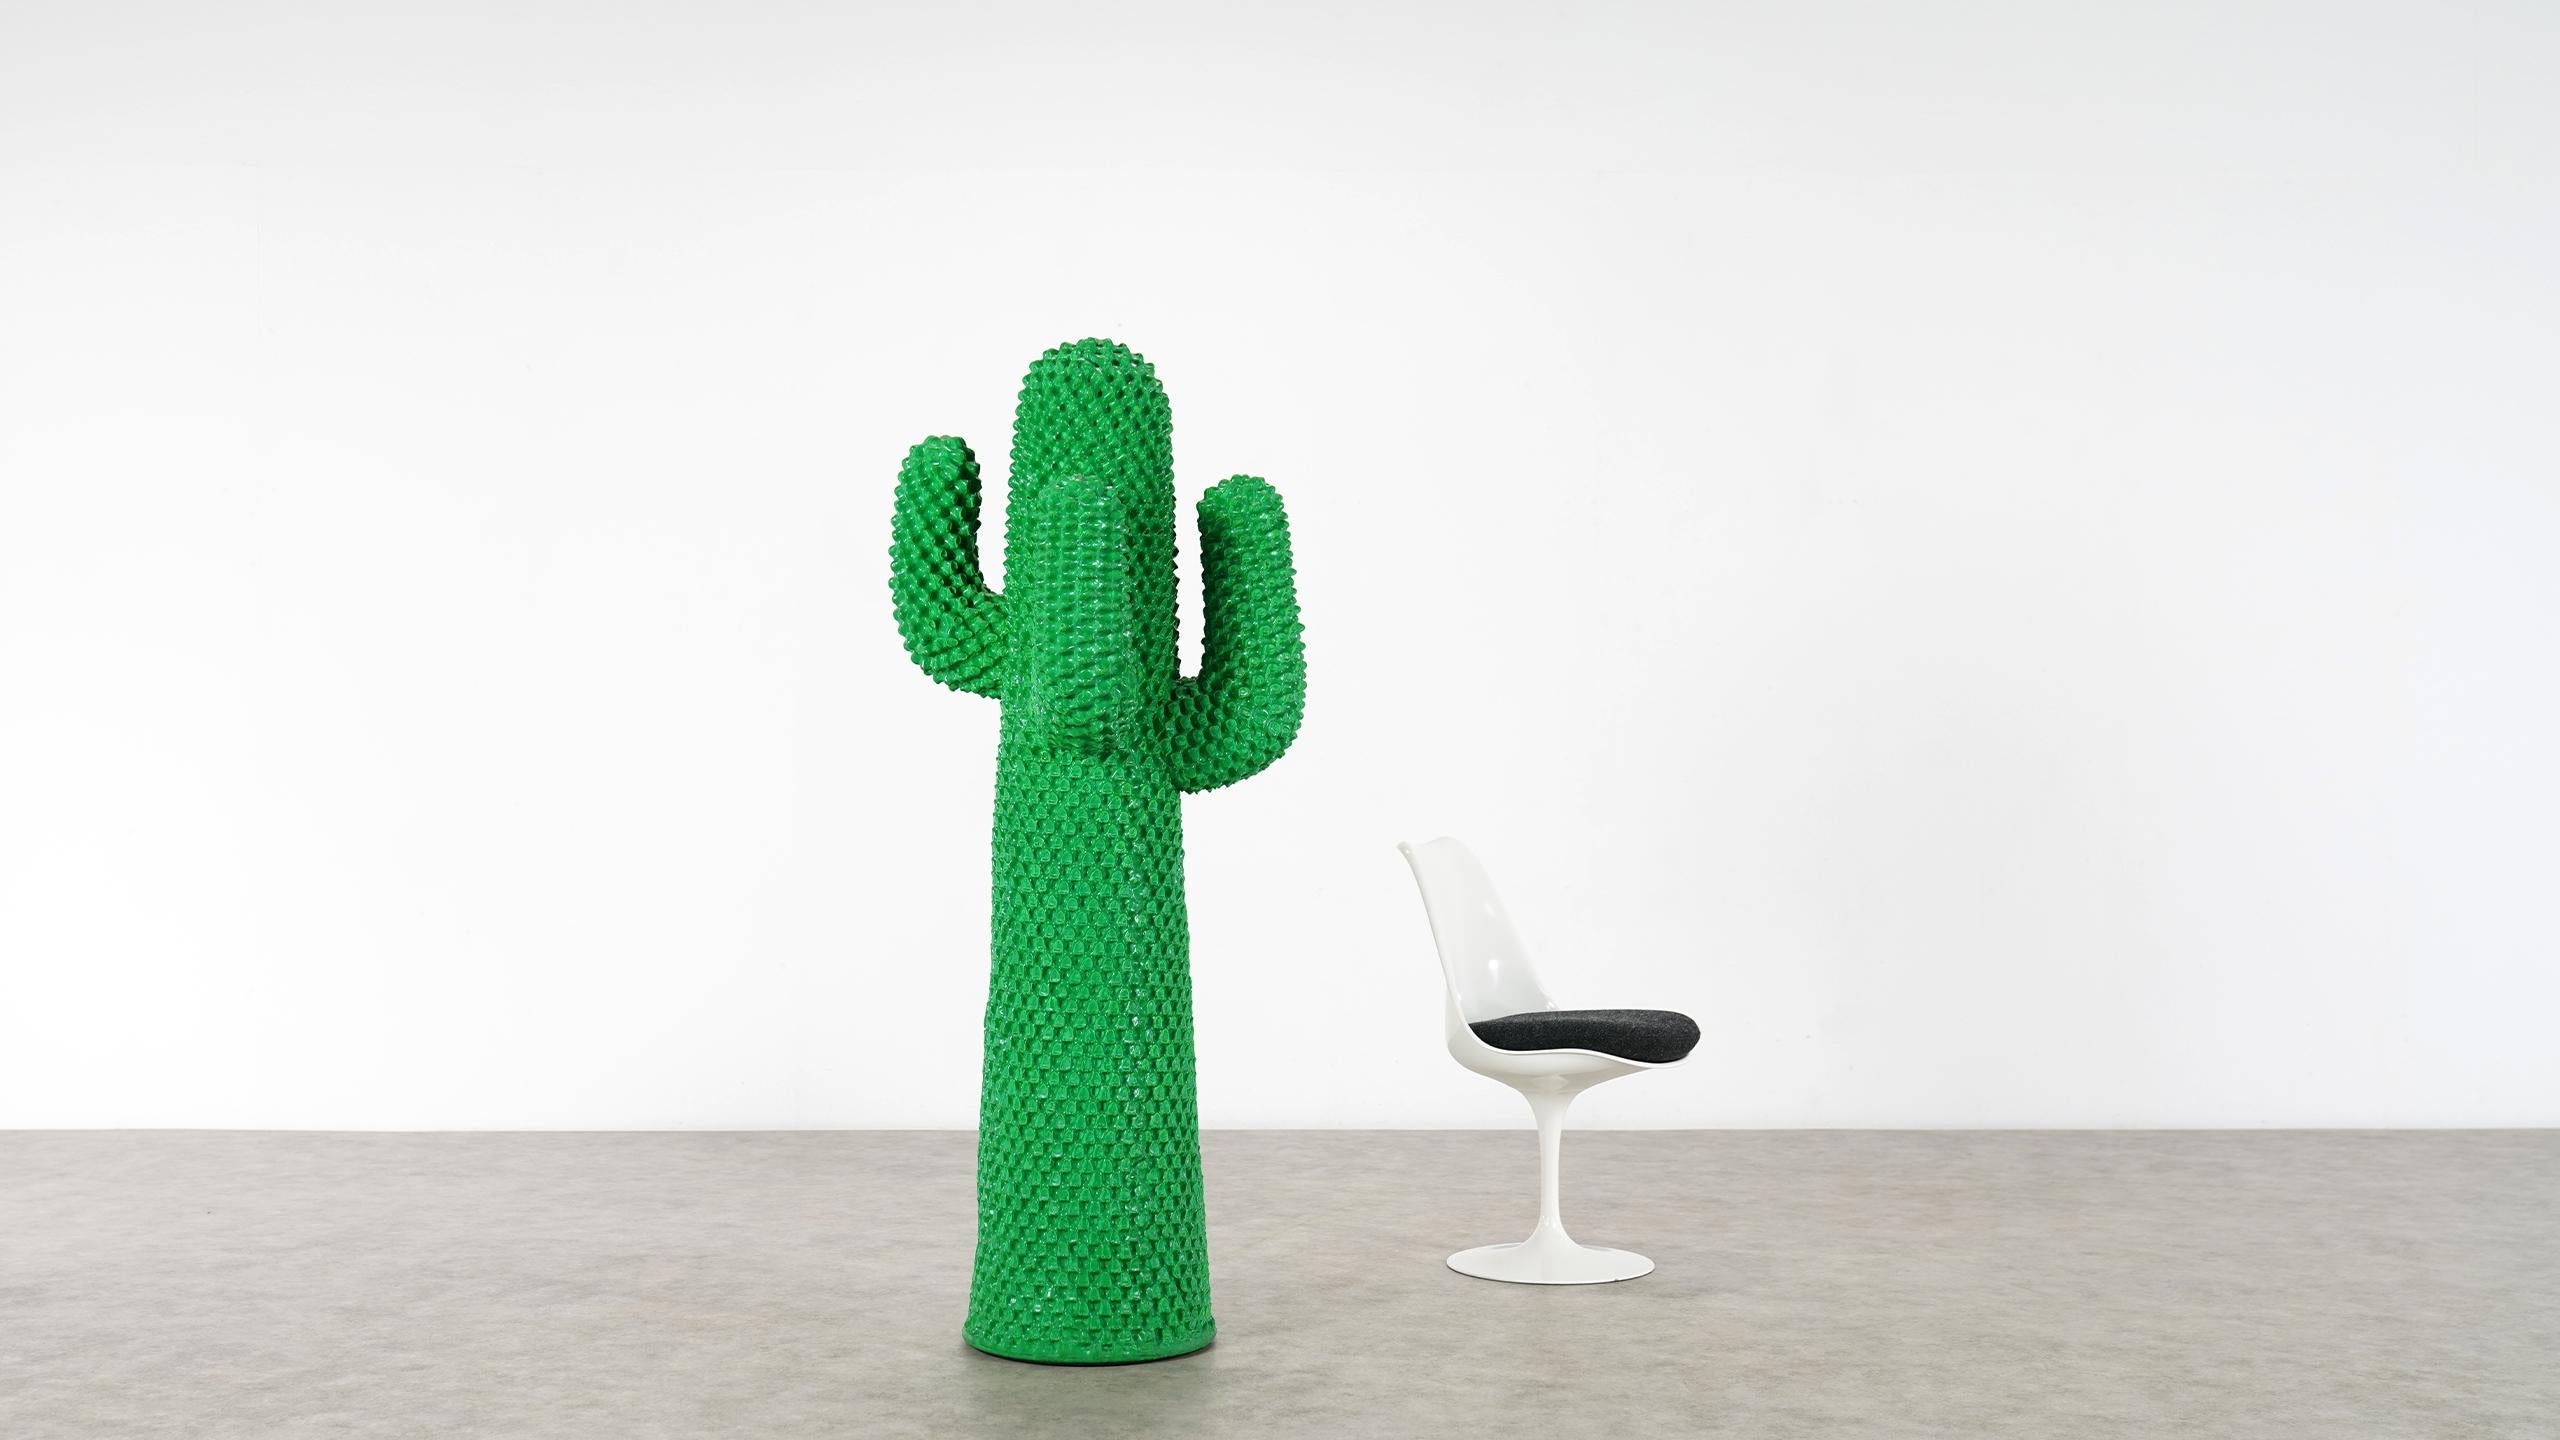 Ikonischer Kaktus-Garderobenständer in sehr gutem Originalzustand. Unterzeichnet N°640 / 2000. Der GUFRAM-Kaktus ist in mehreren Museumssammlungen auf der ganzen Welt zu finden und wird in zahlreichen Publikationen über das Kunstgewerbe des 20.